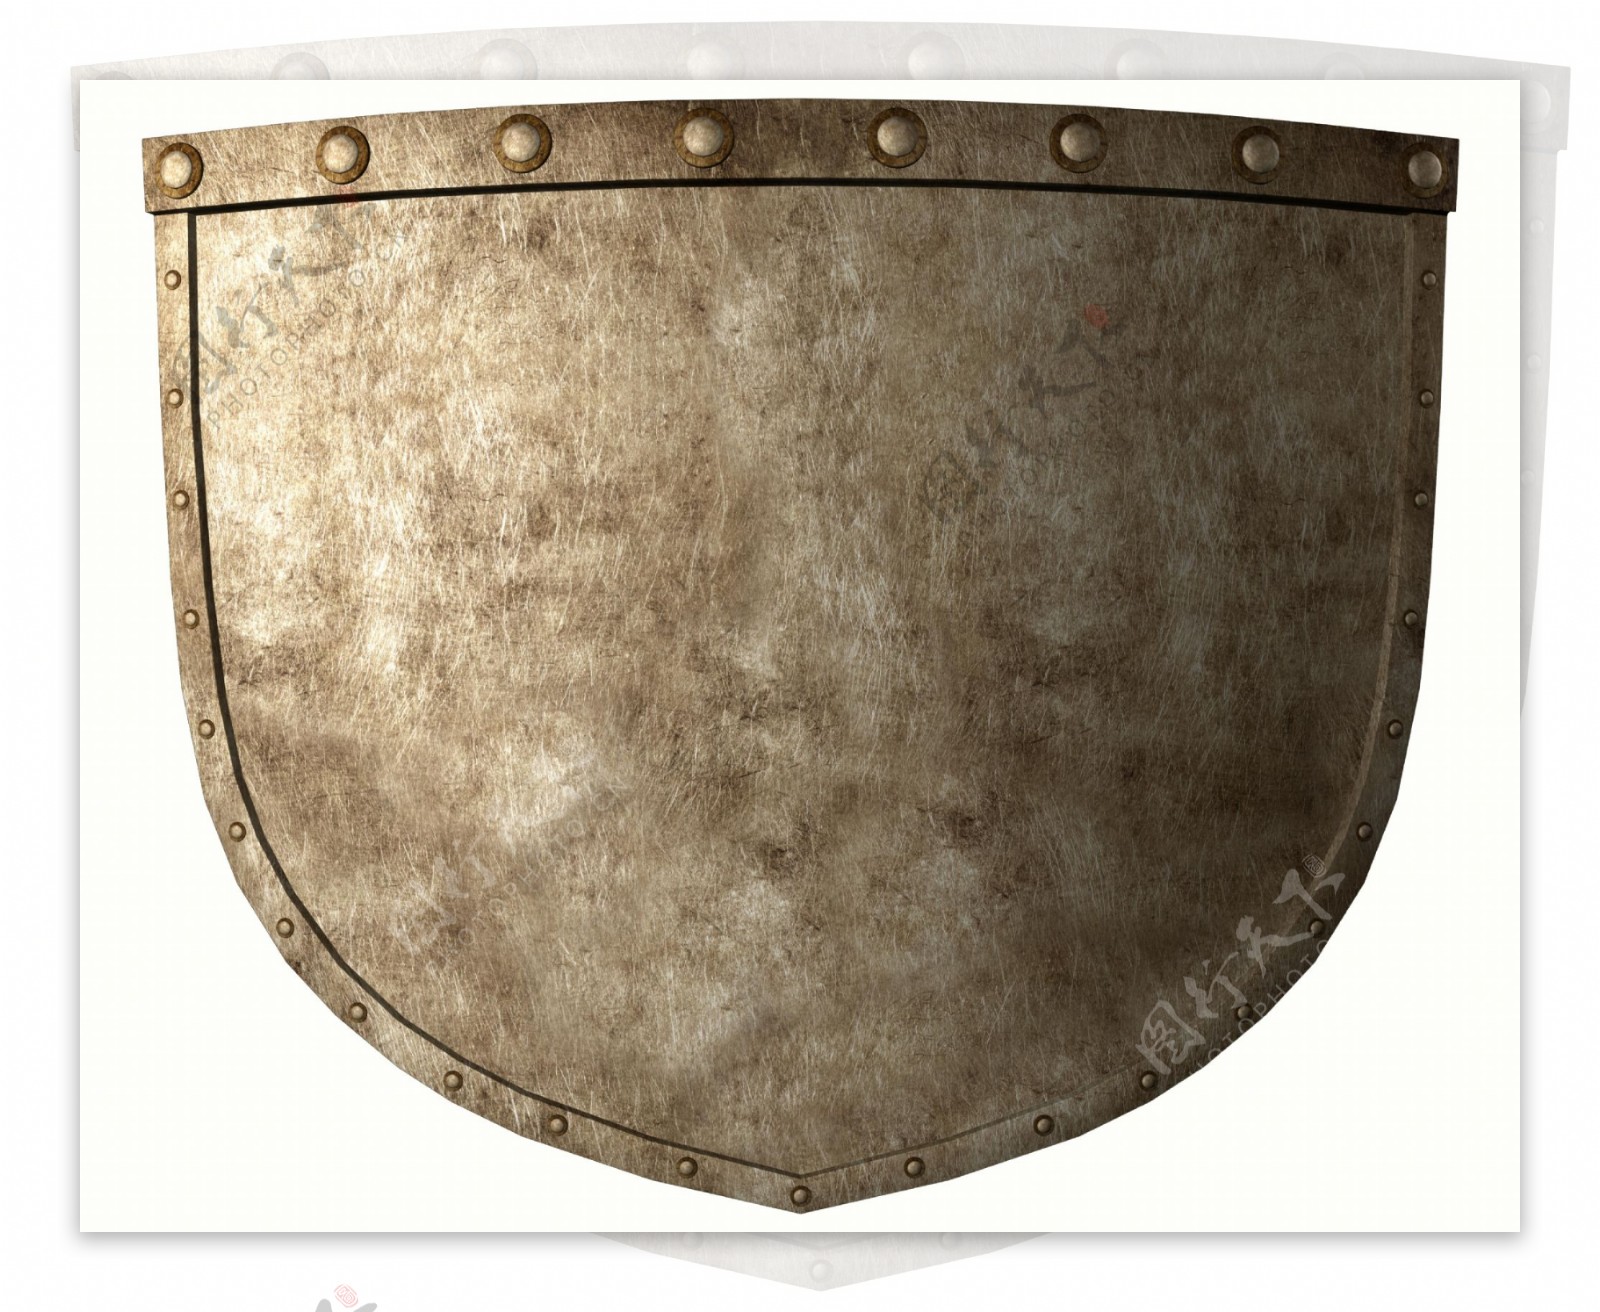 中世纪骑士盾牌高清图片